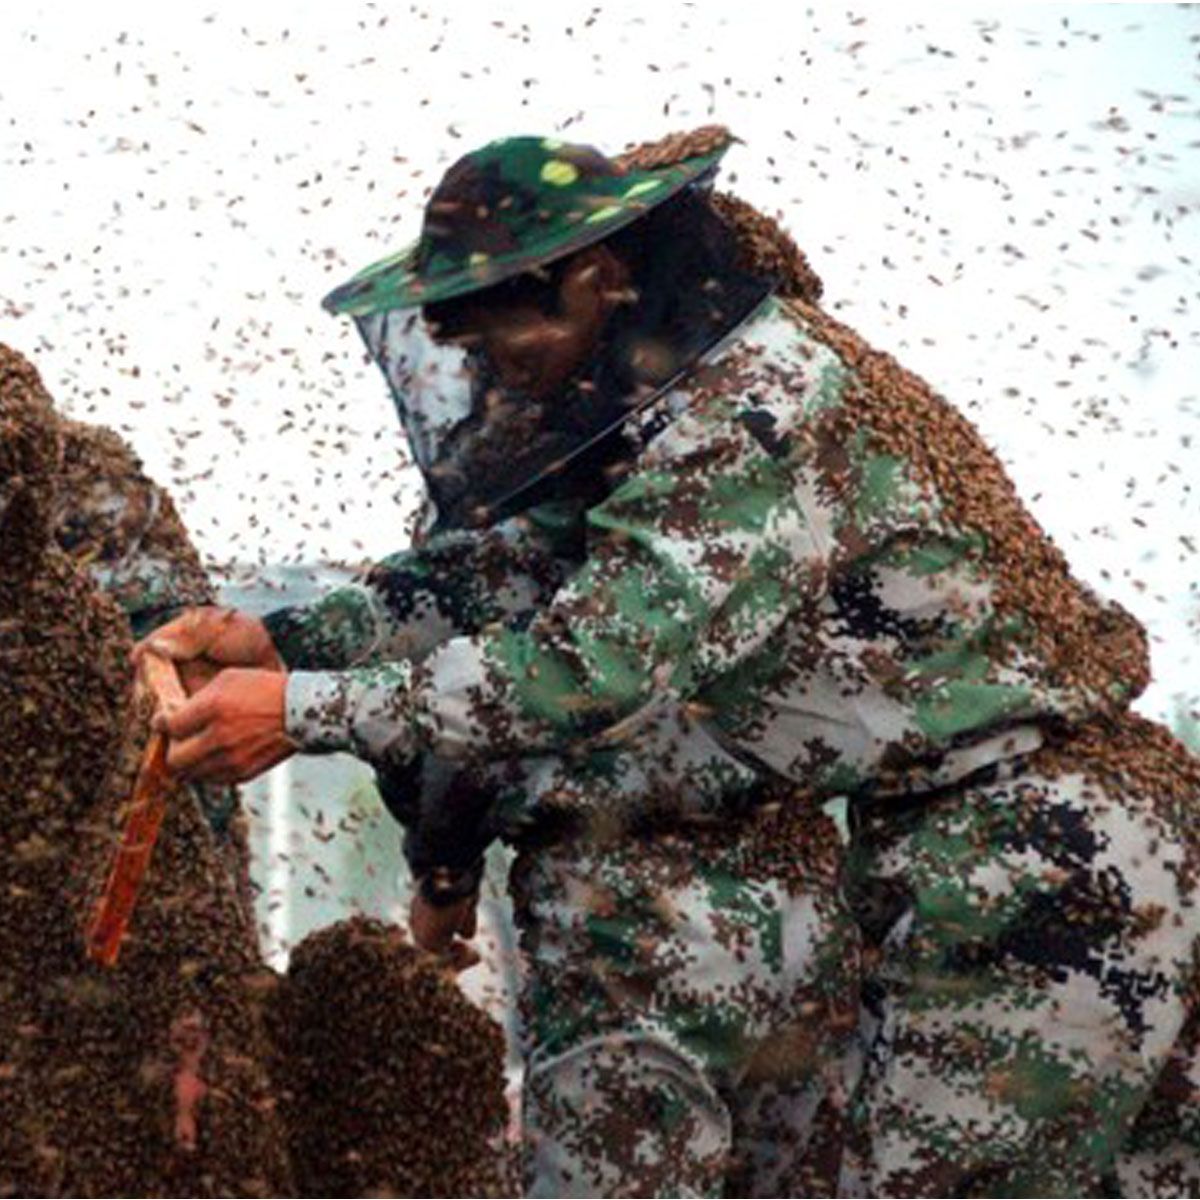 BeeKeeping-Suit-BeeKeeper-Protective-Equipment-Veil-Hat-Smock-Full-Body-Camo-1351837